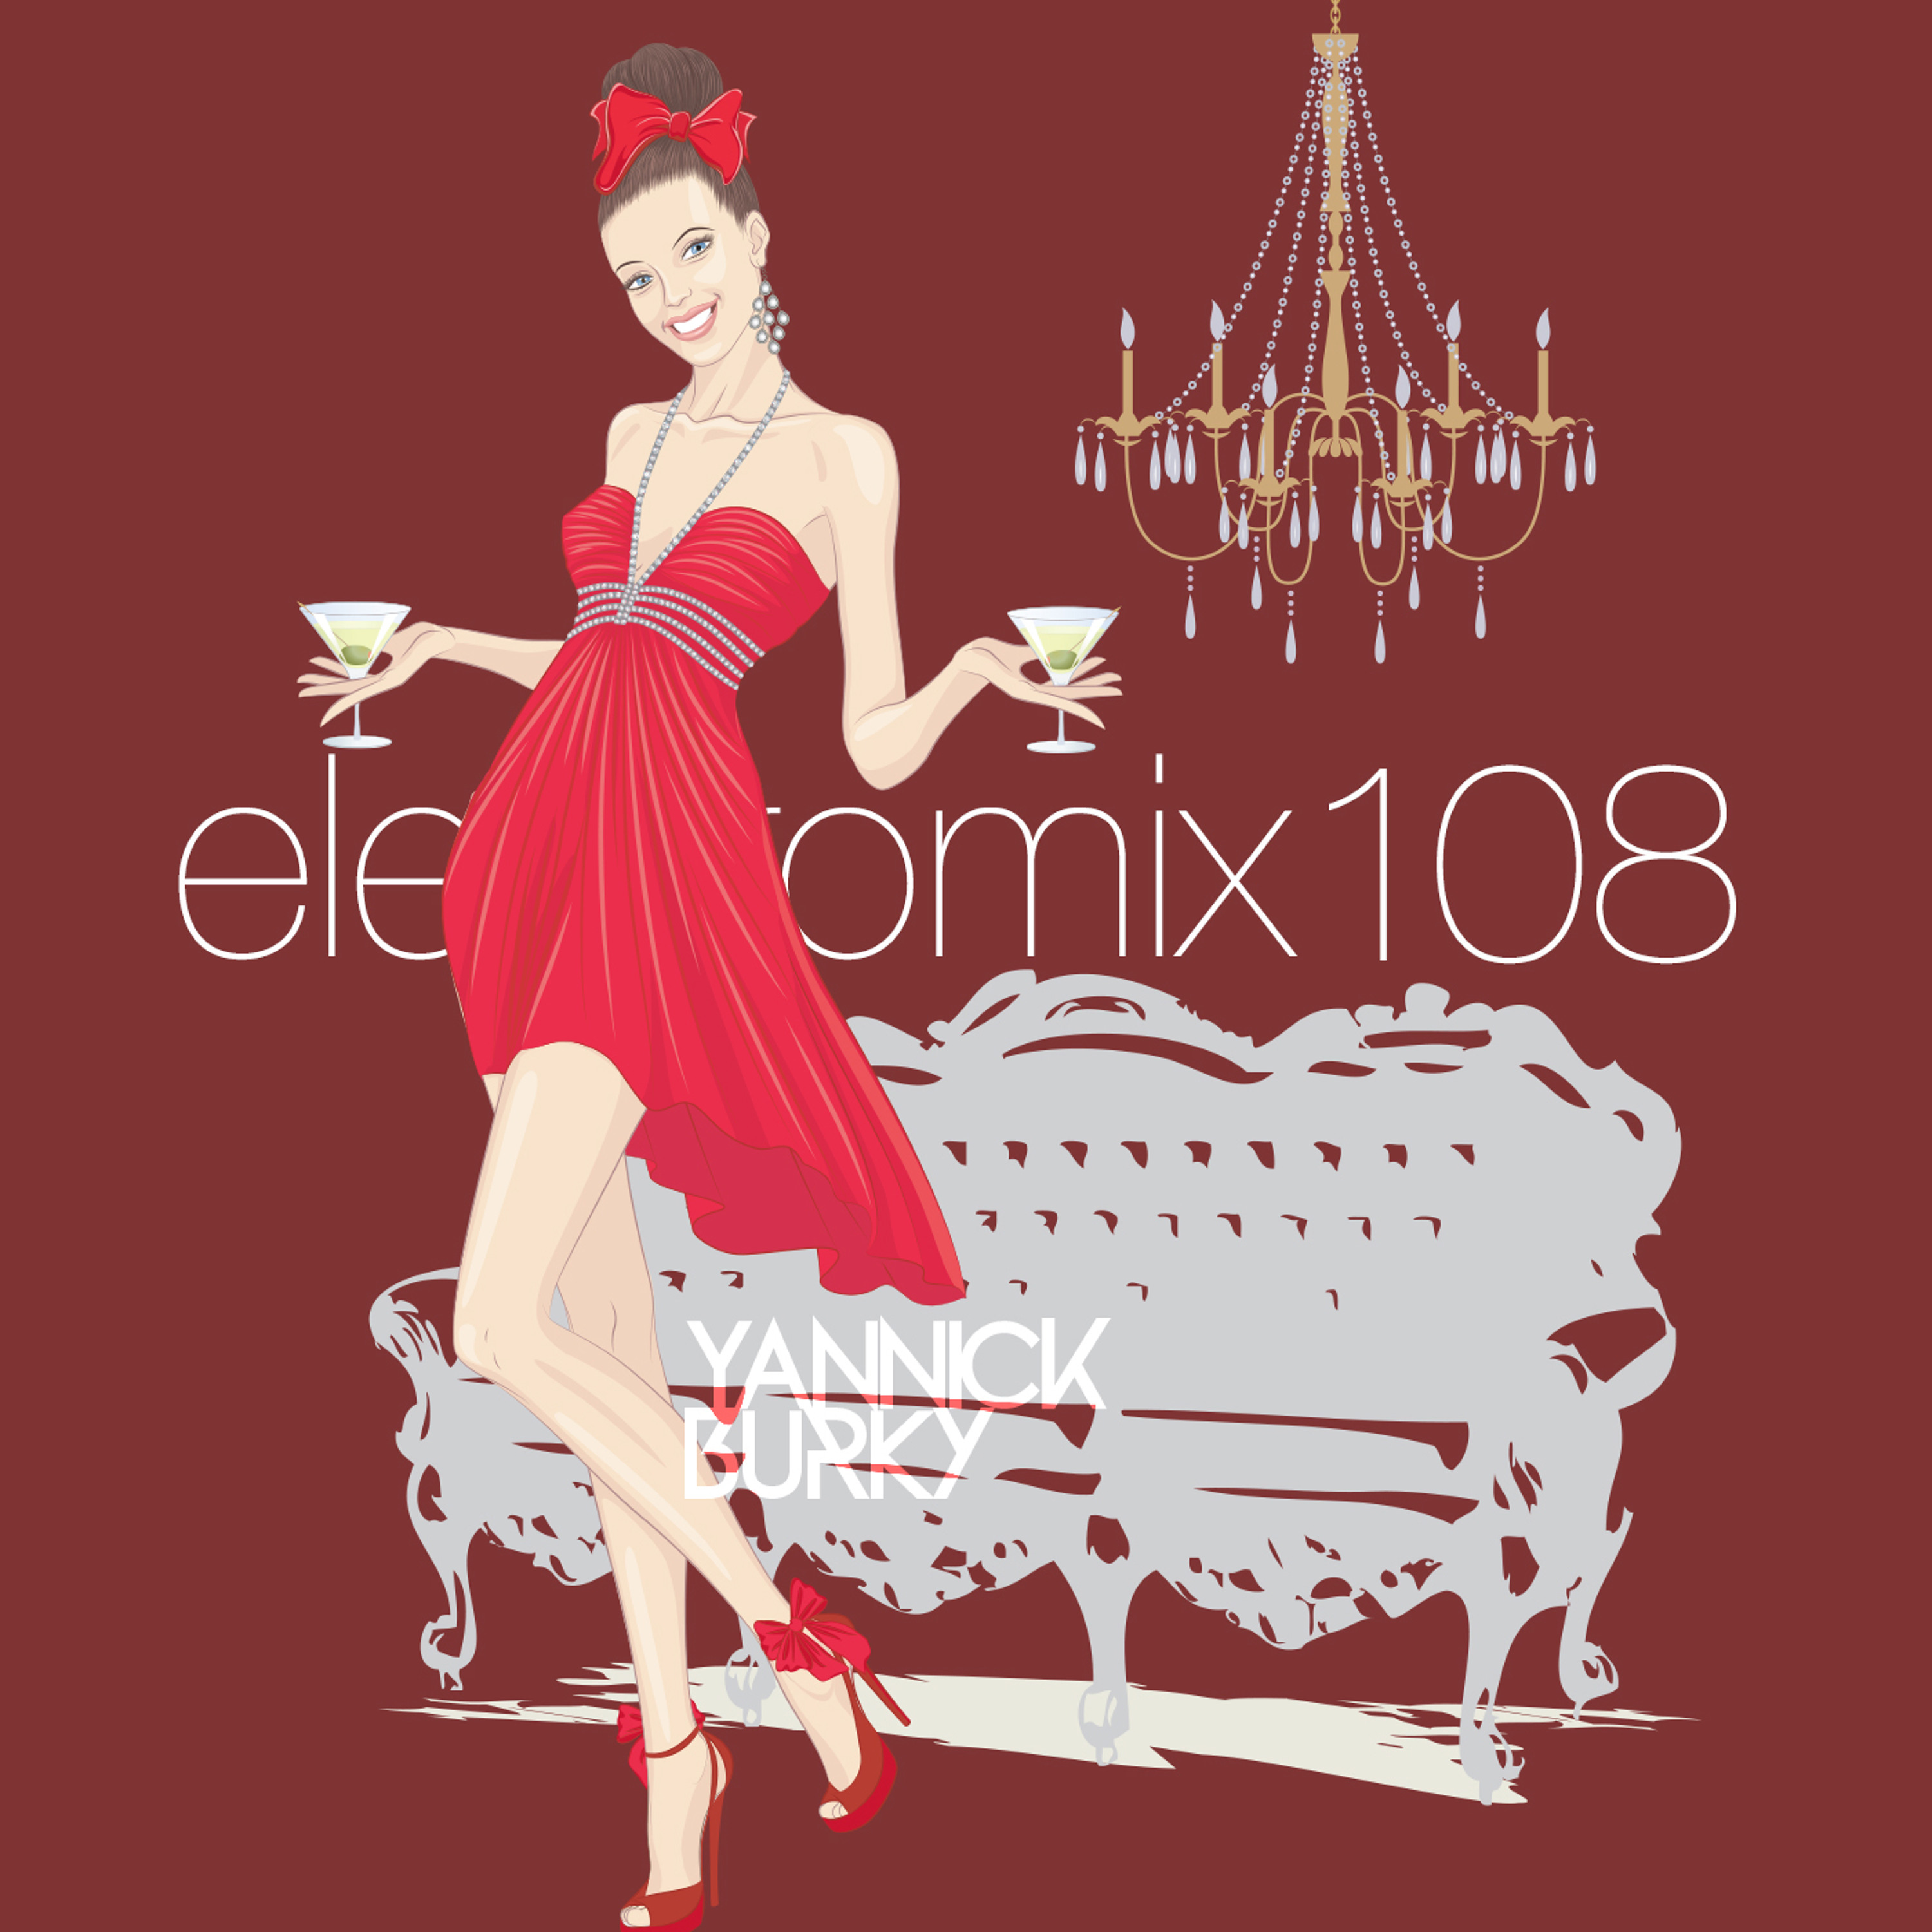 electromix 108 • EDM